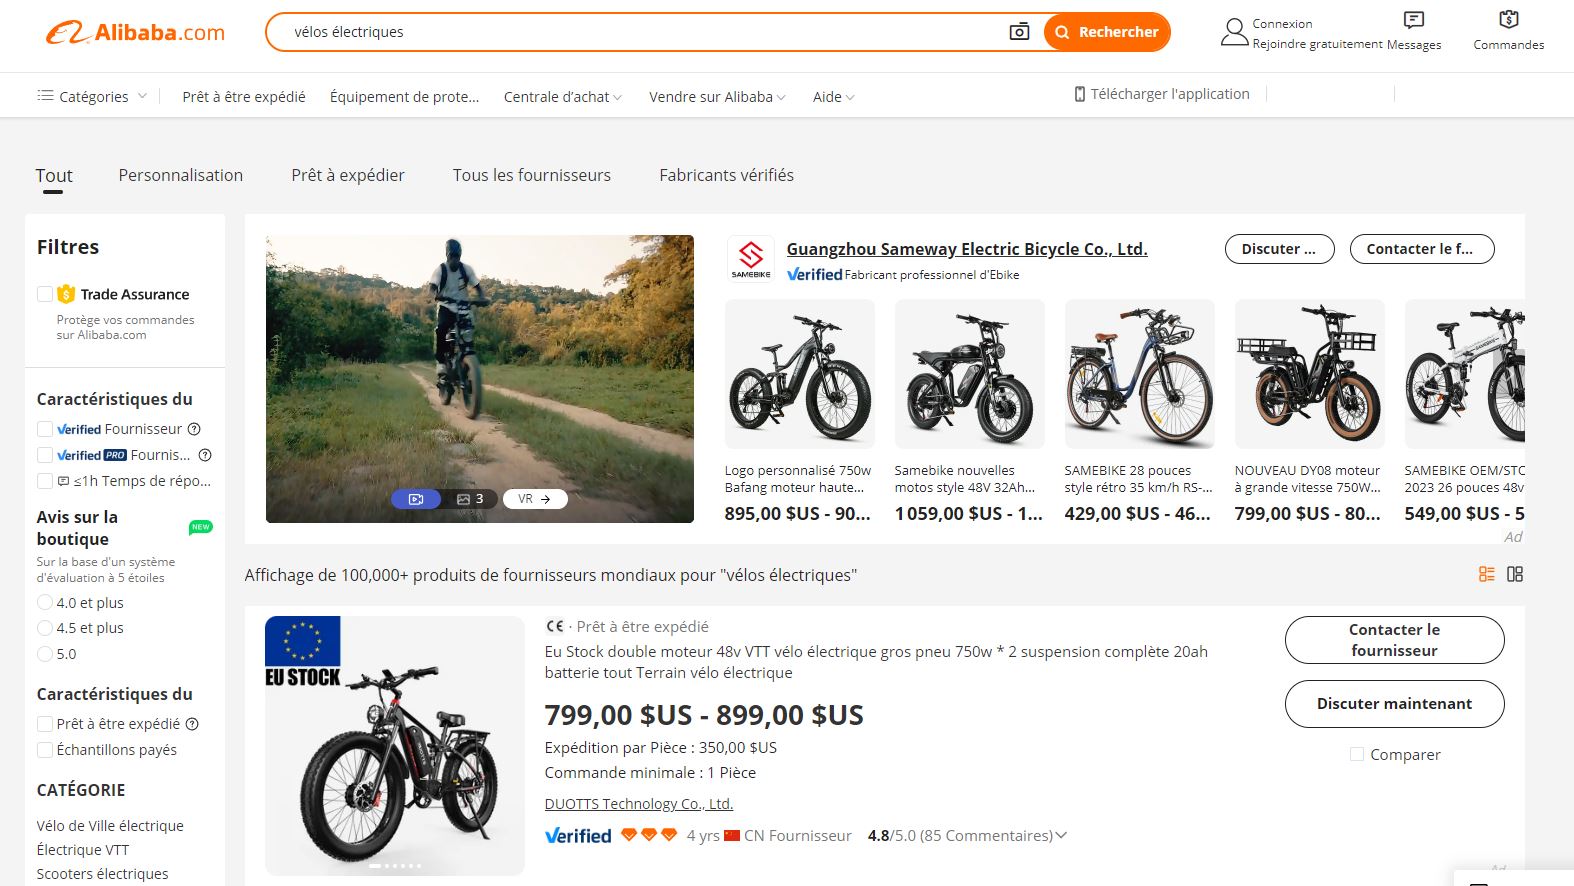 Image d'un site Web affichant différents types de vélos, notamment d'un fabricant de vélo électrique et des vélo électriques chinois.